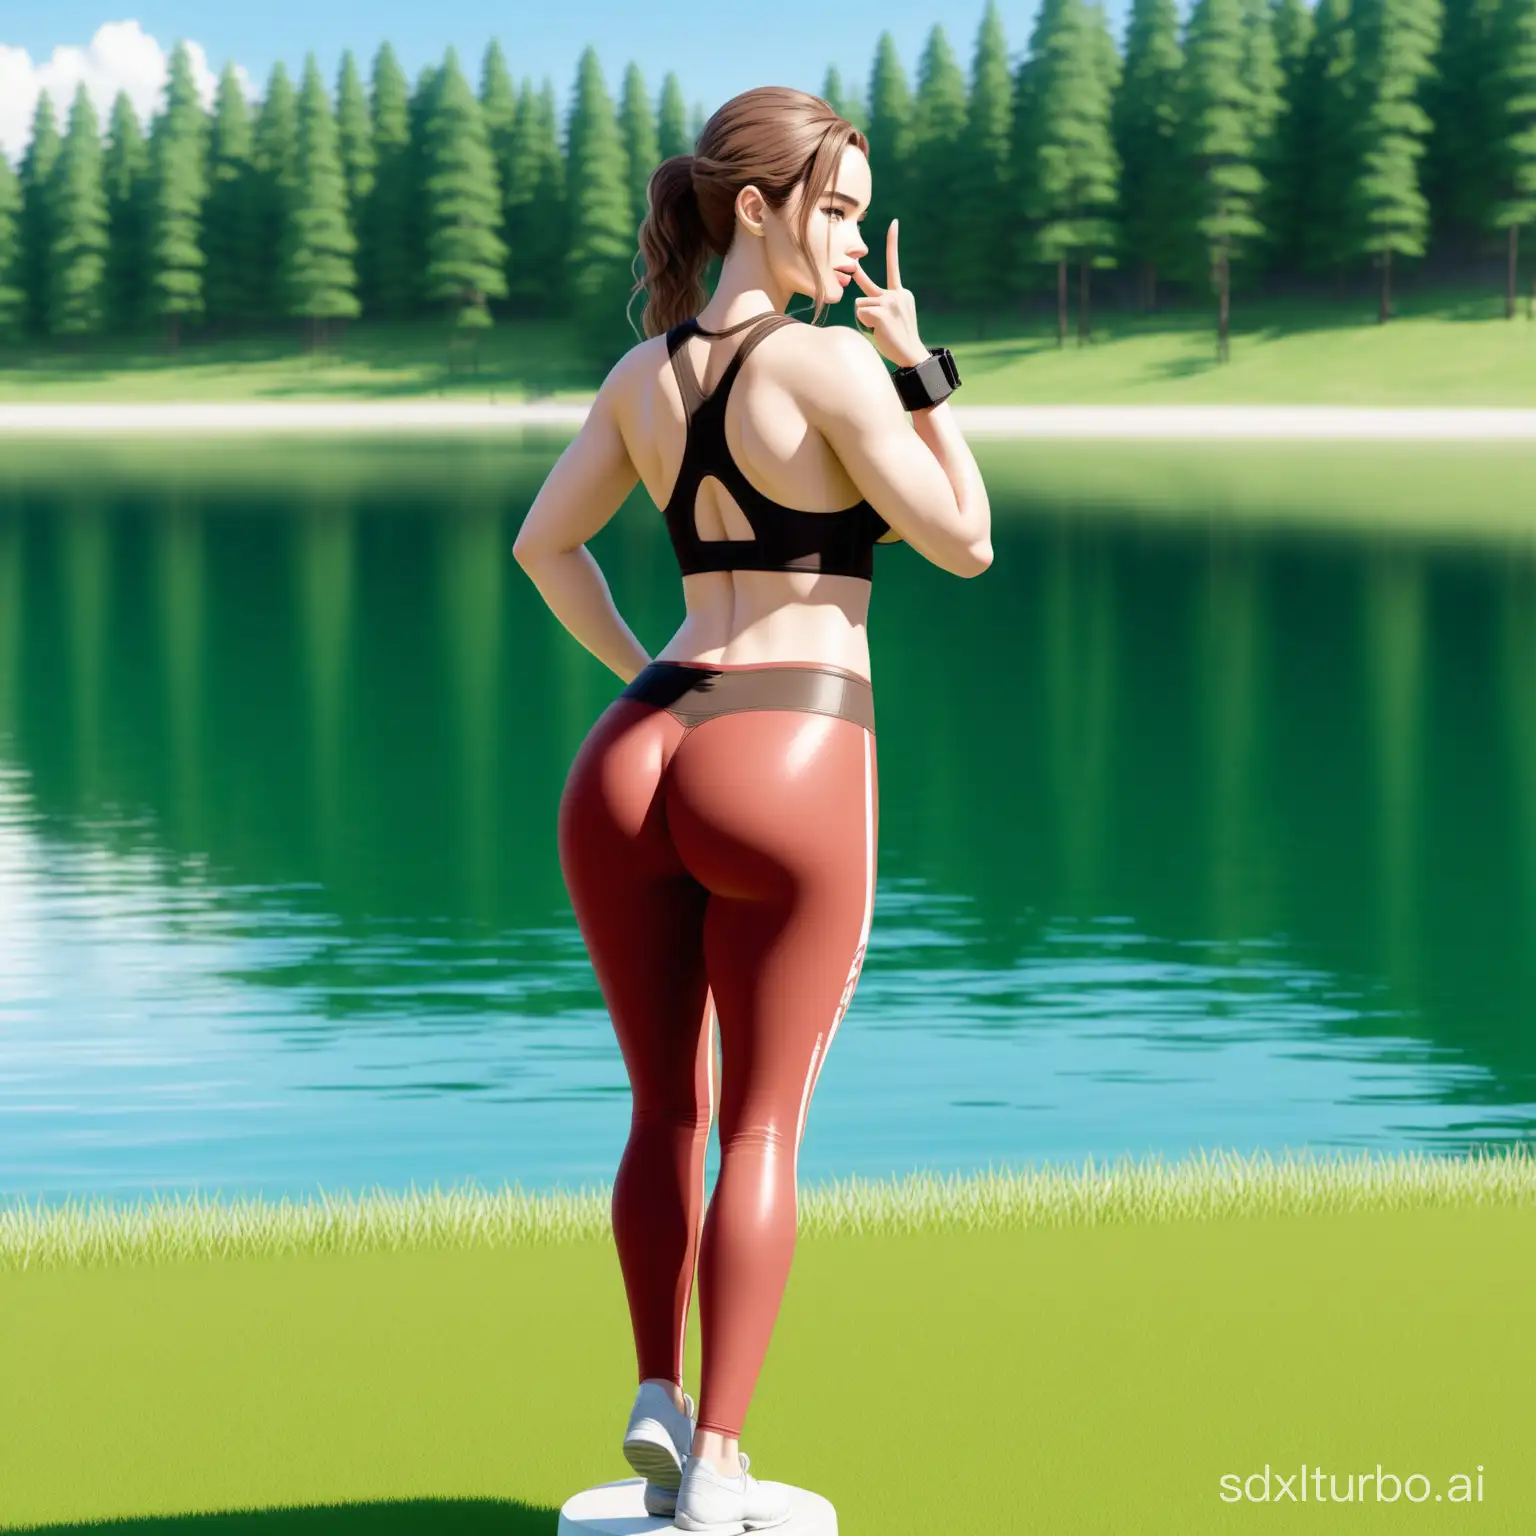 Busty-Gyaru-Emilia-Clarke-as-Lara-Croft-Aerobics-in-Underboob-Bodysuit-by-the-Lake